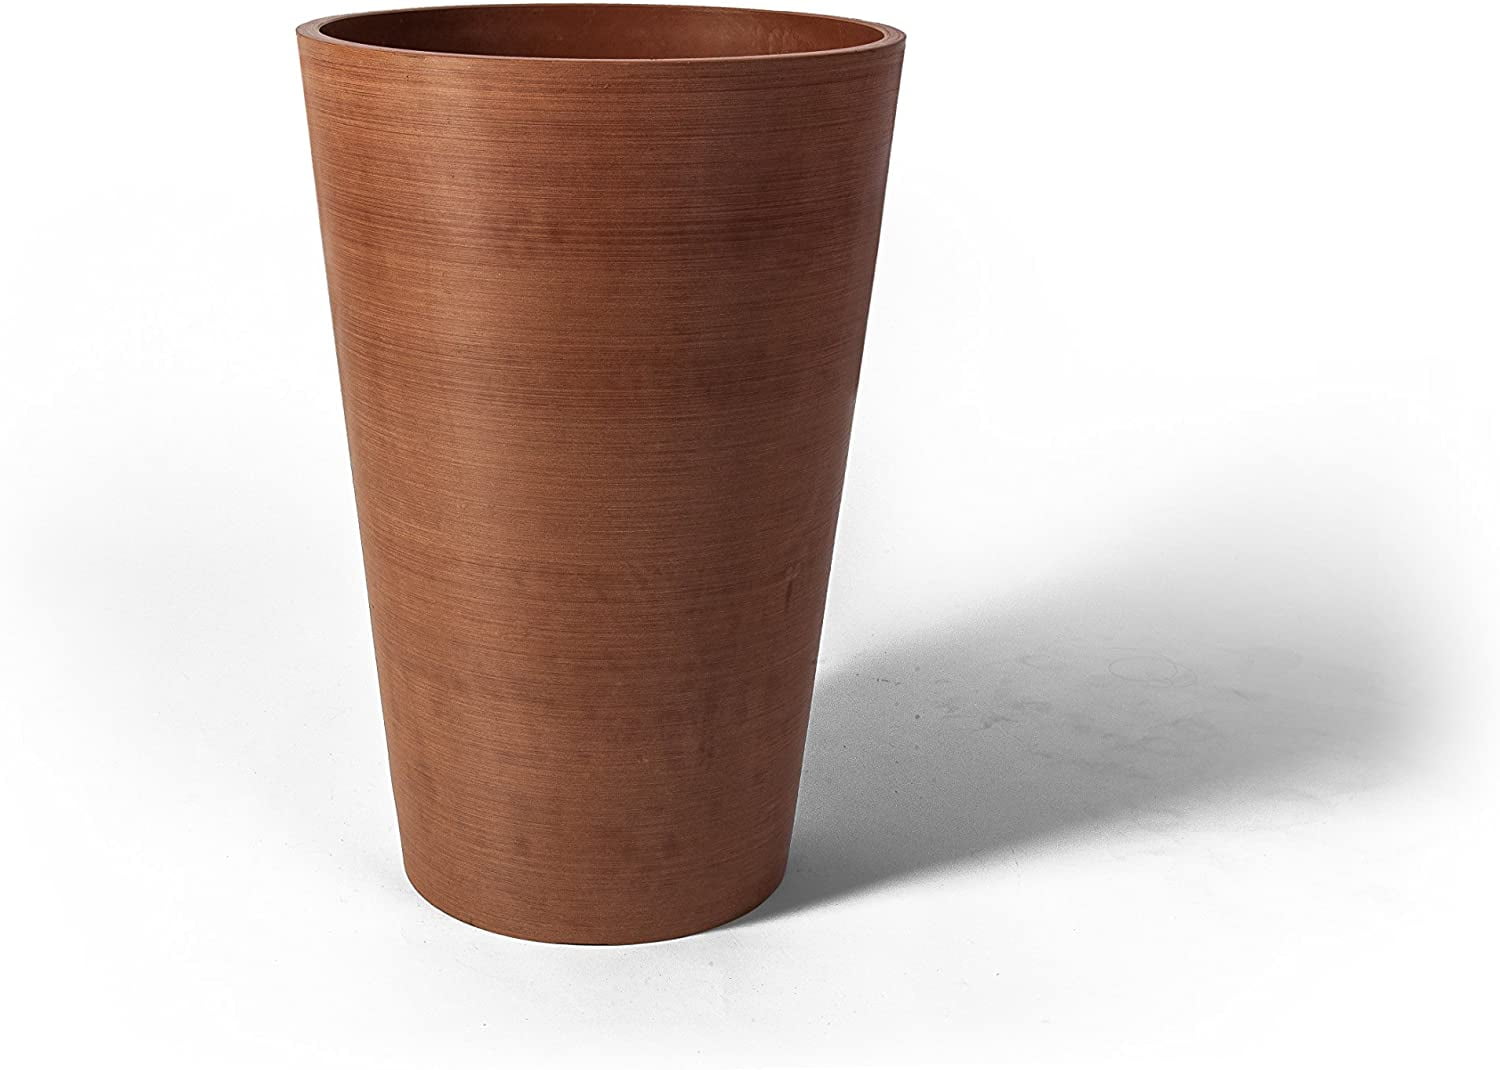 16730 18 X 12.5 X 12.5 In. Valencia Round Planter Pot, Textured Terra Cotta